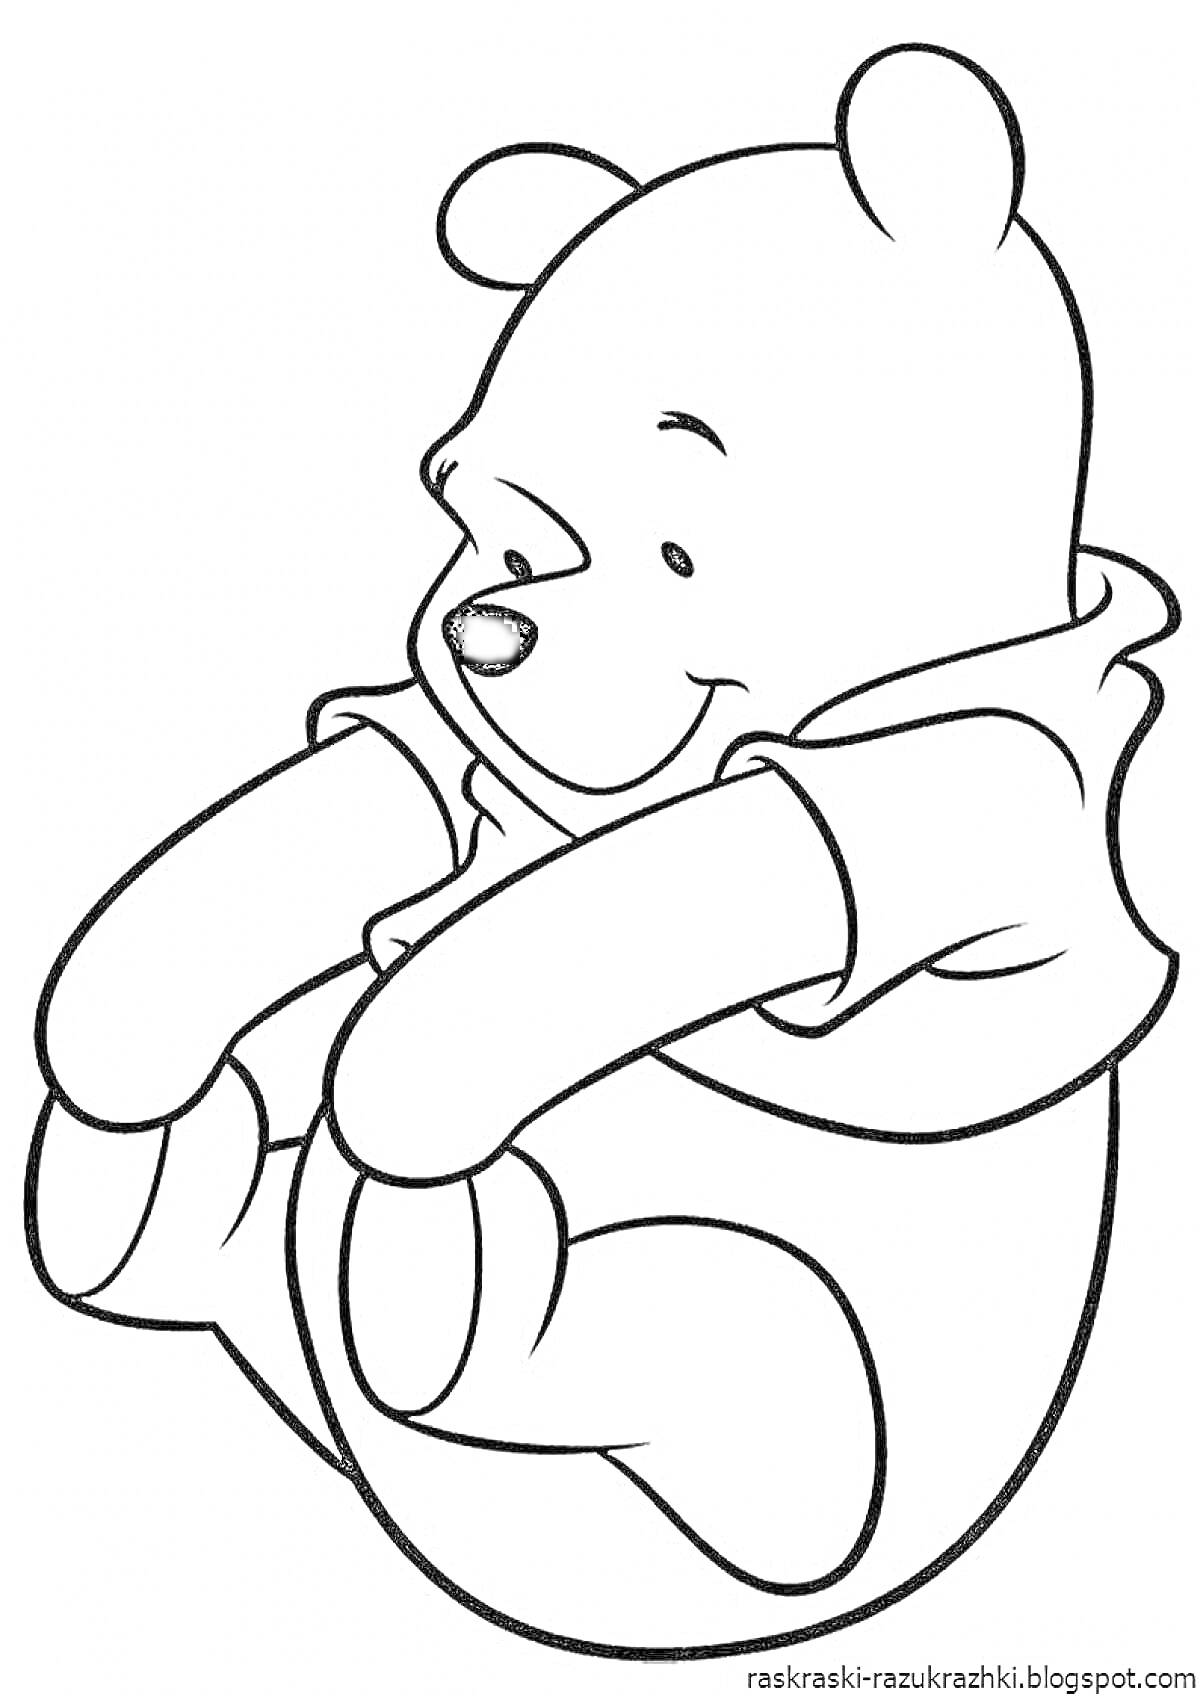 Раскраска Медвежонок Винни-Пух сидит, одет в кофту